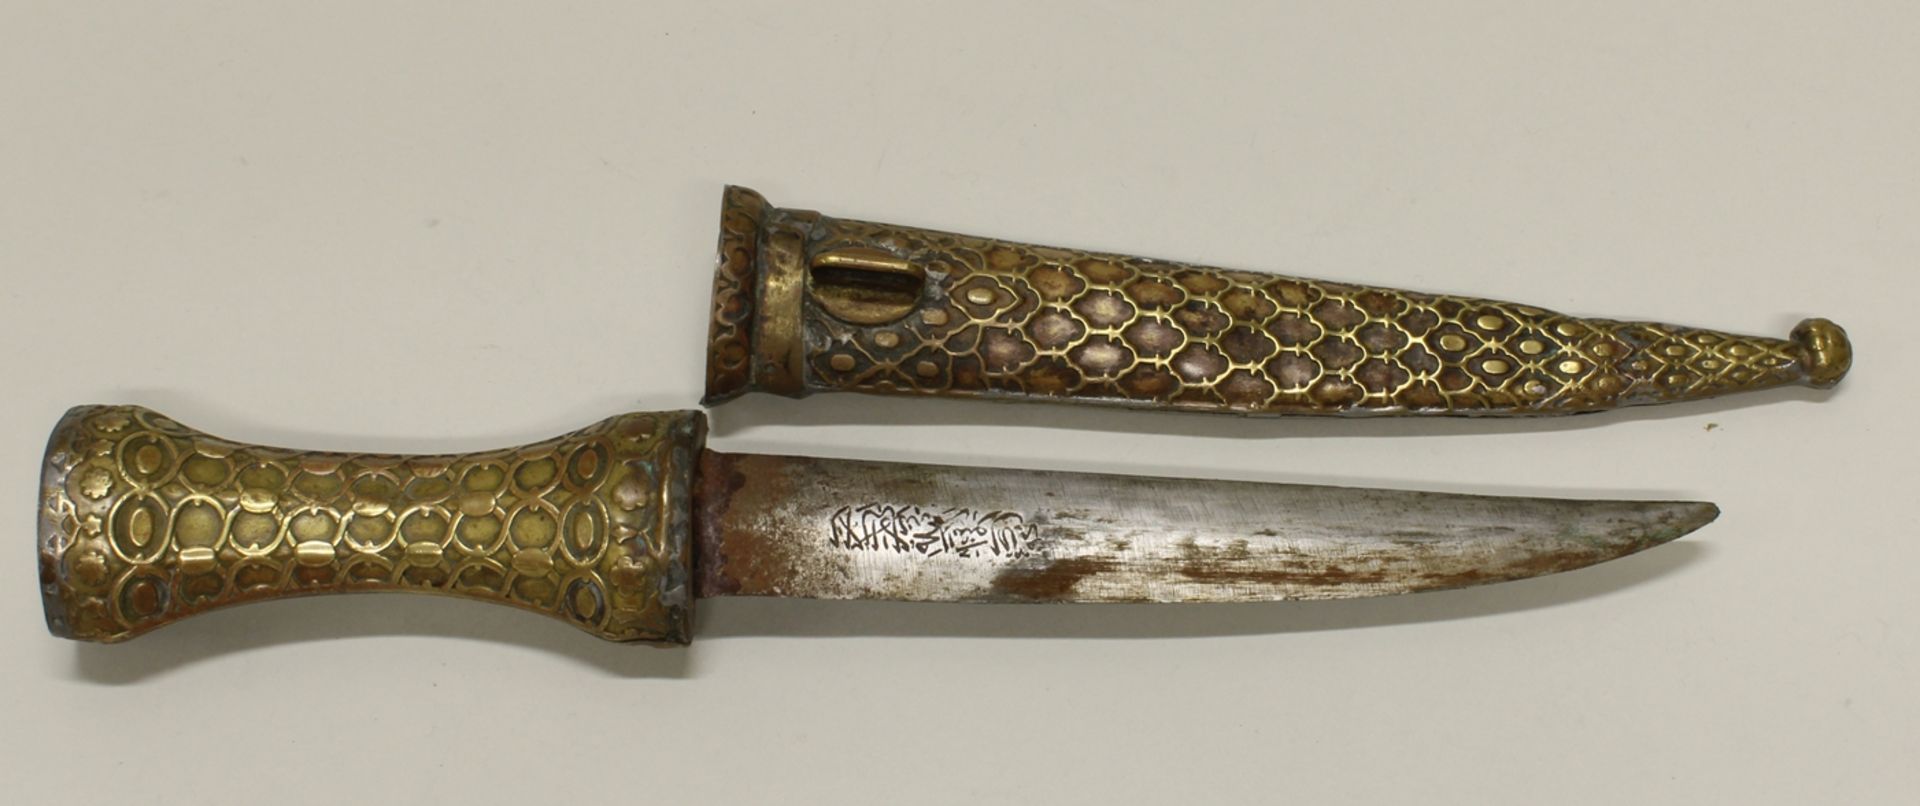 Dolch, Orient, 20. Jh., Eisenklinge mit Gravur, Griff und Scheide aus ornamentalem Metall, 34.5 cm